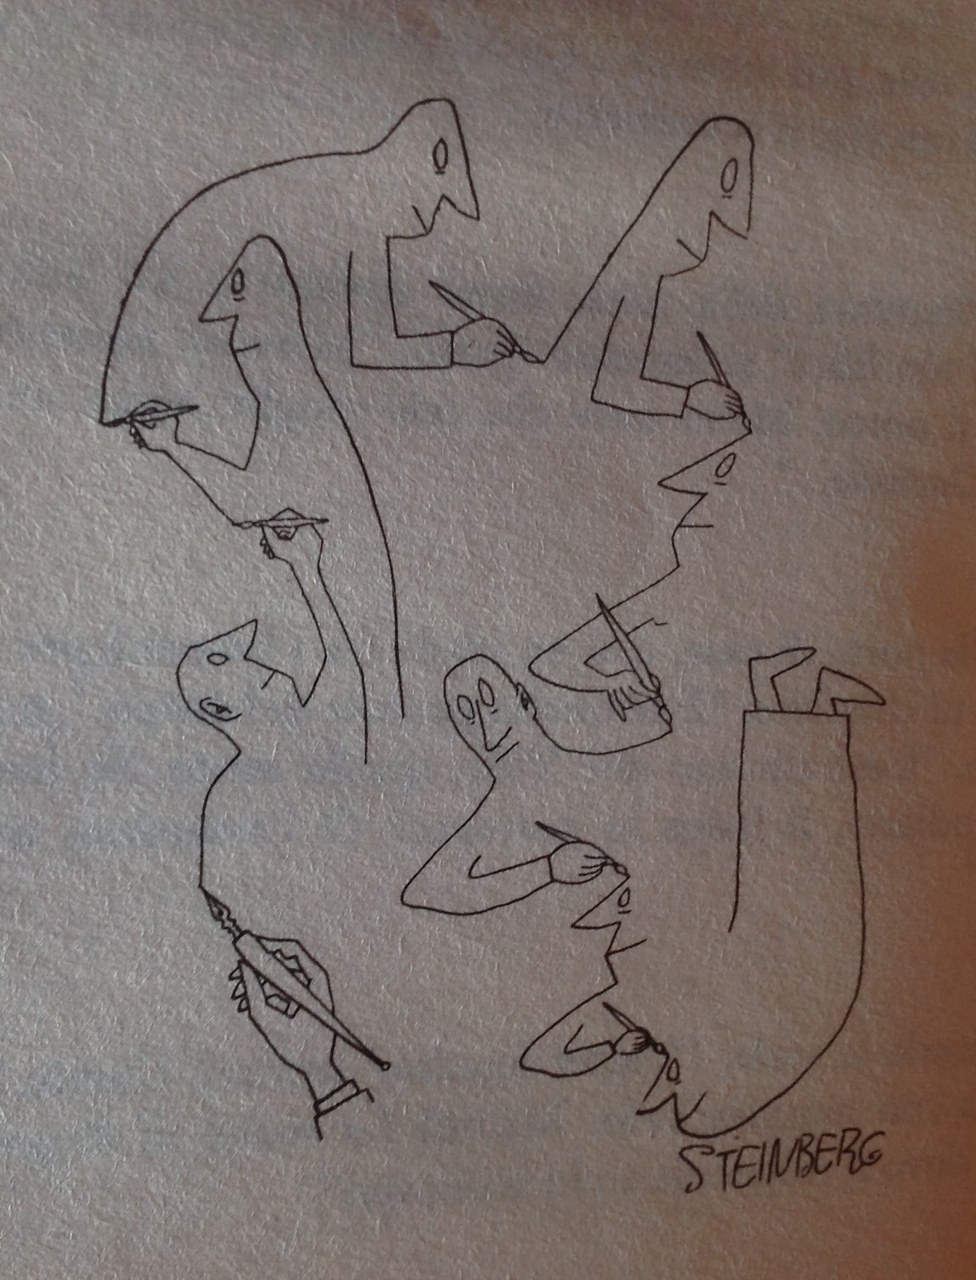 disegno di Saul Steinberg, 1946, in G. Bufalino, Qui pro quo, Milano, Bompiani, 2003